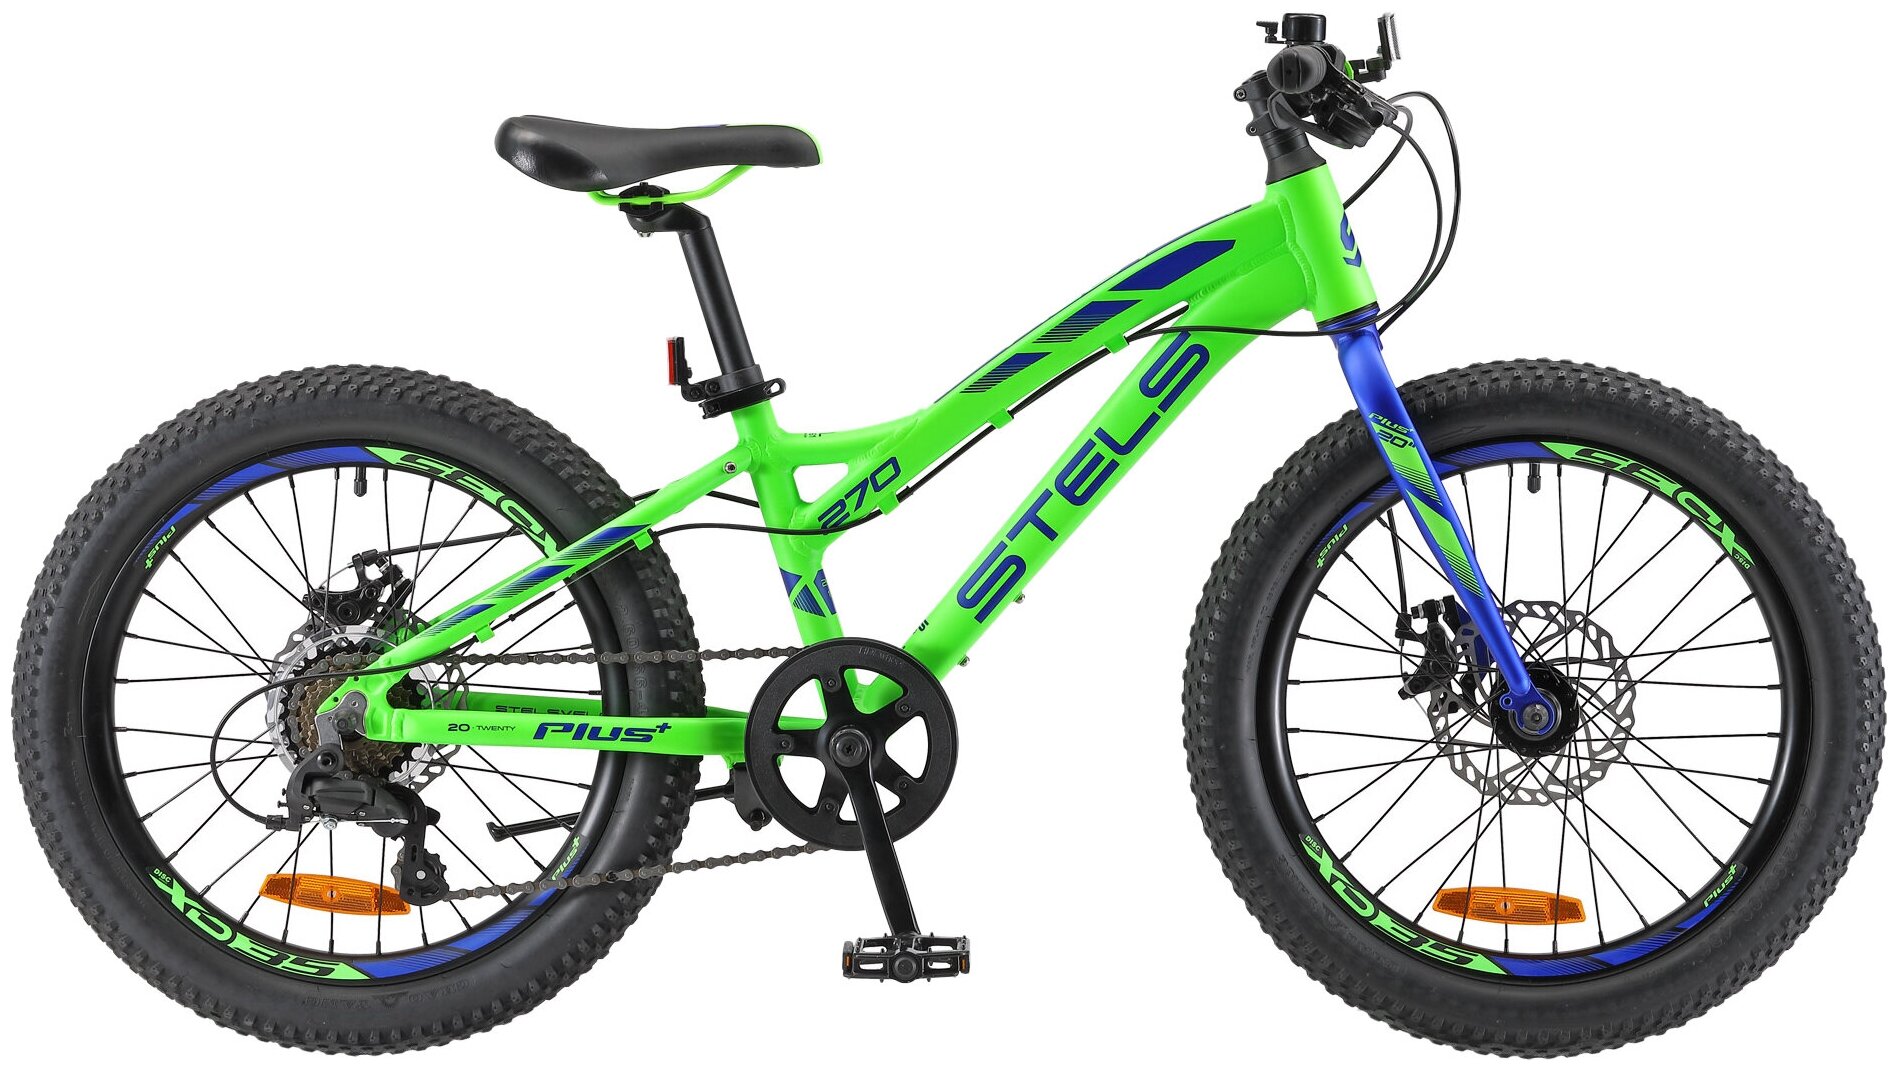 Подростковый горный (MTB) велосипед STELS Pilot 270 MD 20"+ V010 (2018) зеленый 11" (требует финальной сборки)